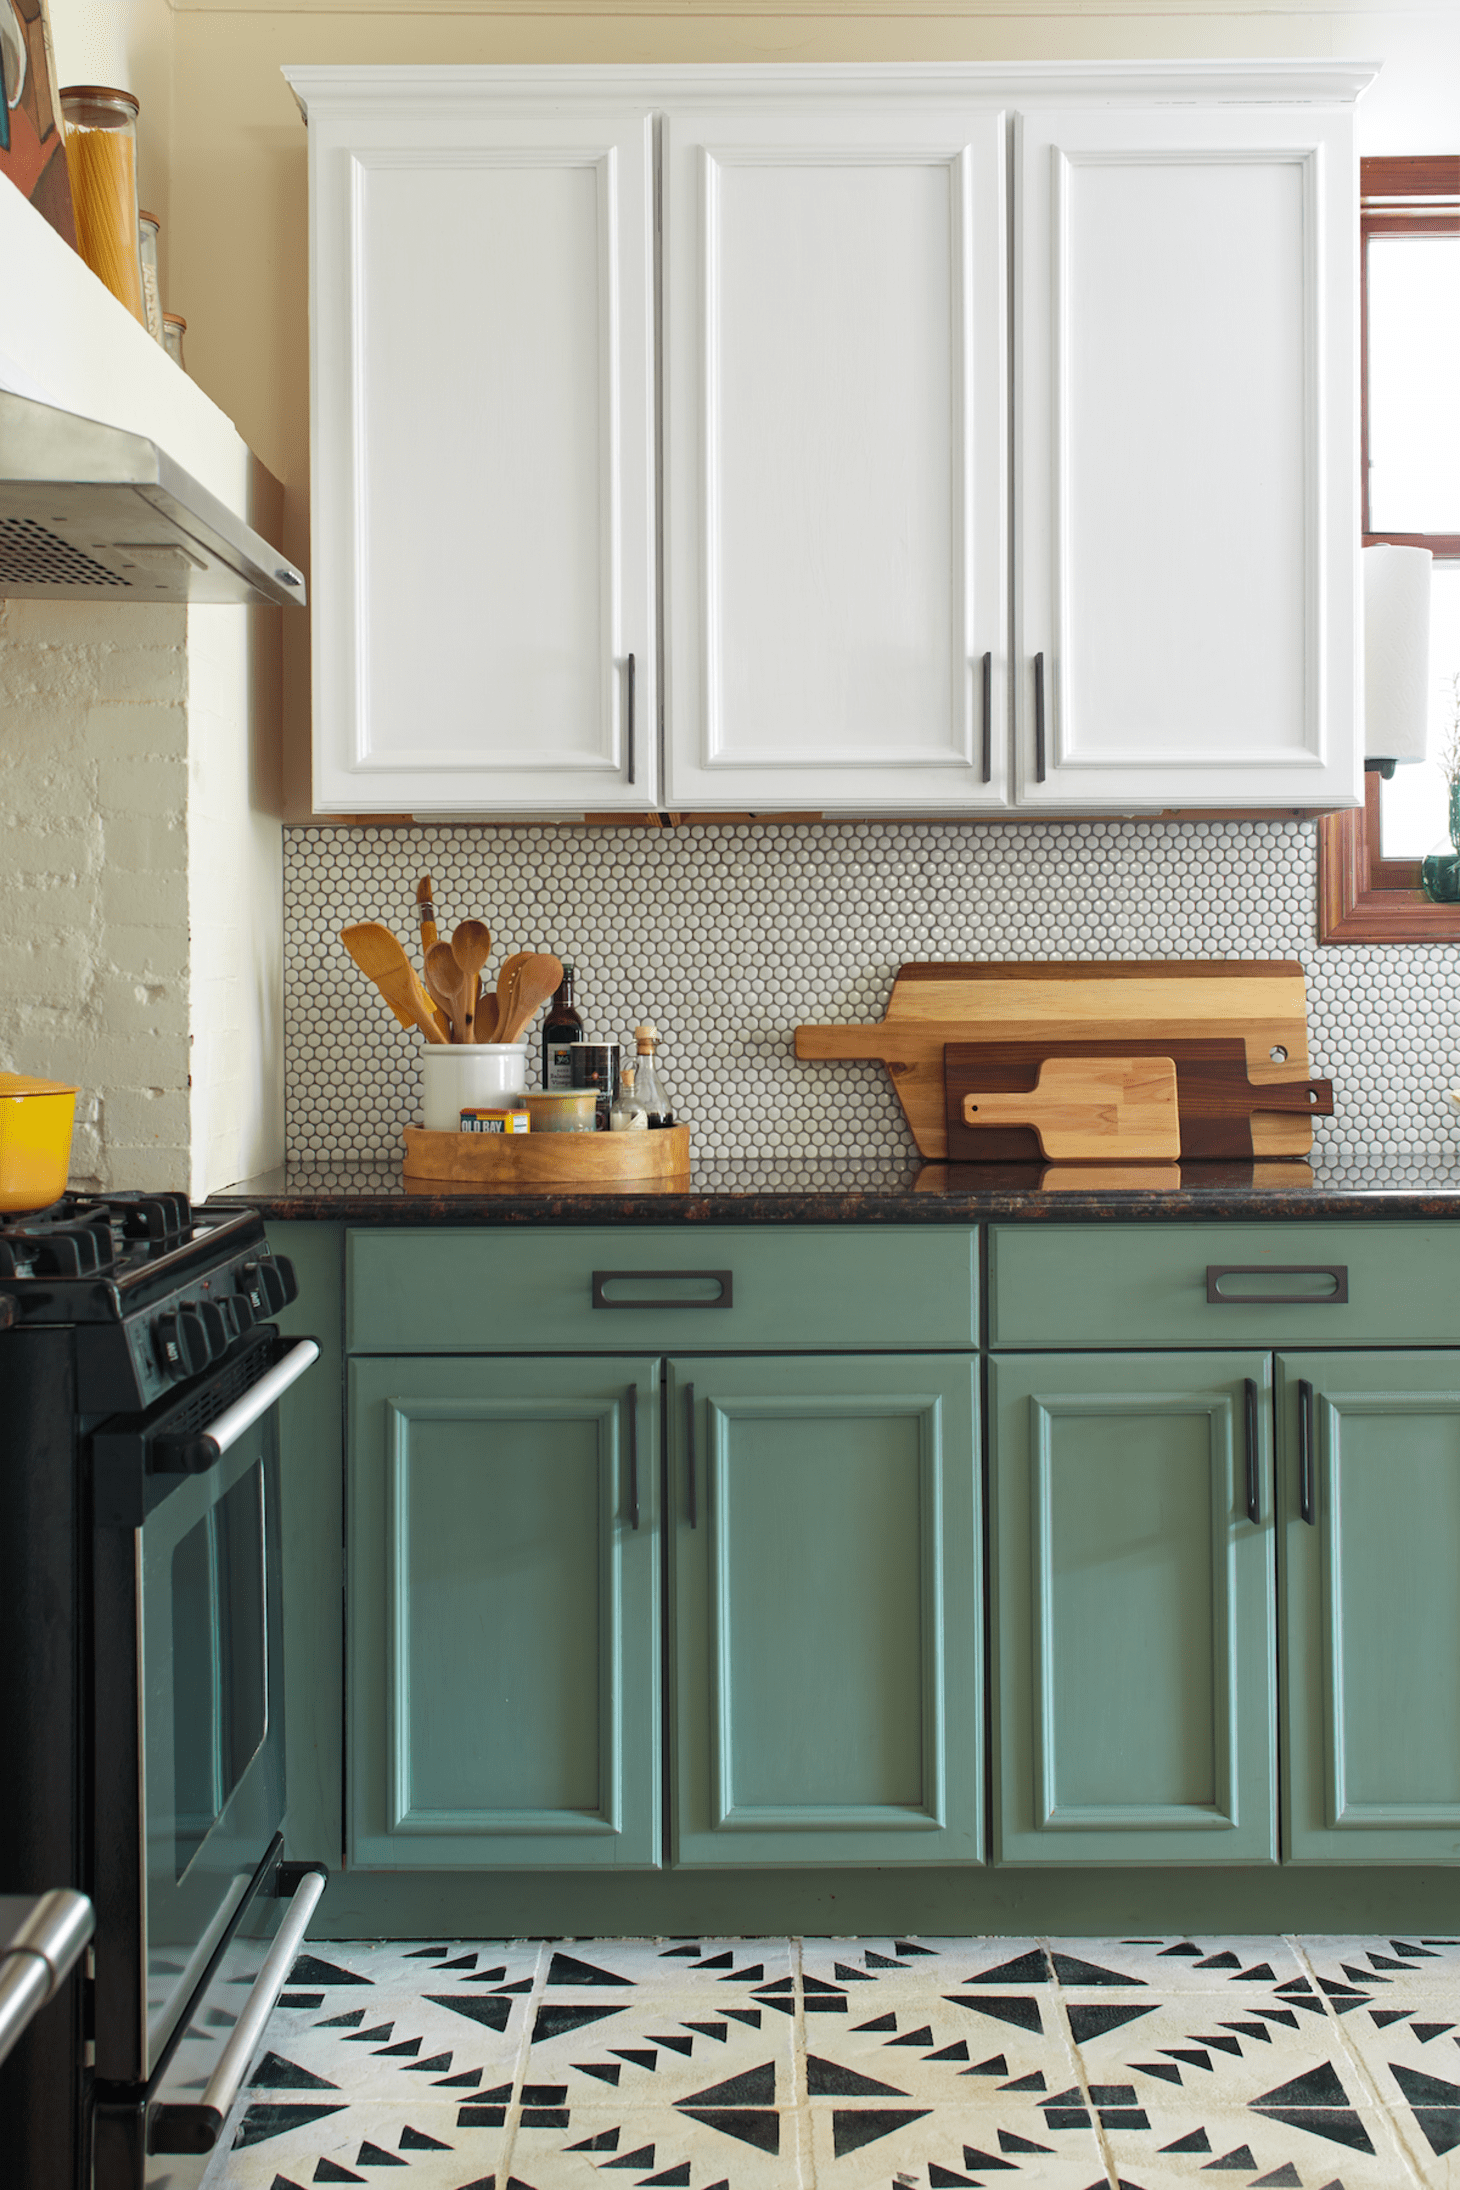 Một căn bếp với màu tươi sáng làm chủ đạo có thể lựa chọn sơn màu xanh cho tủ bếp dưới. Gam màu xanh nhẹ nhàng giúp không gian tươi tắn, đẹp mắt và trẻ trung hơn.